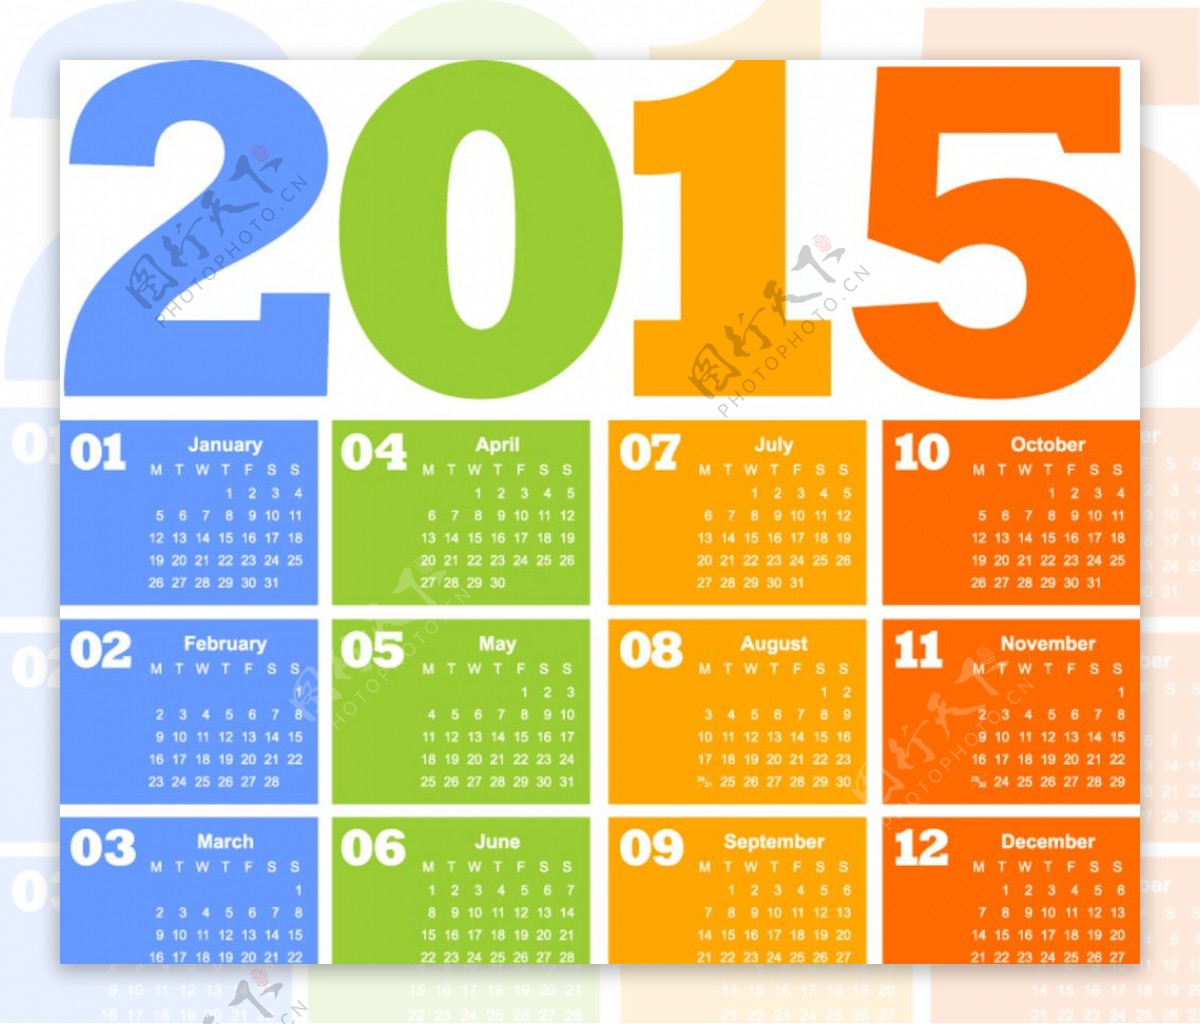 2015年彩色年历设计矢量素材图片